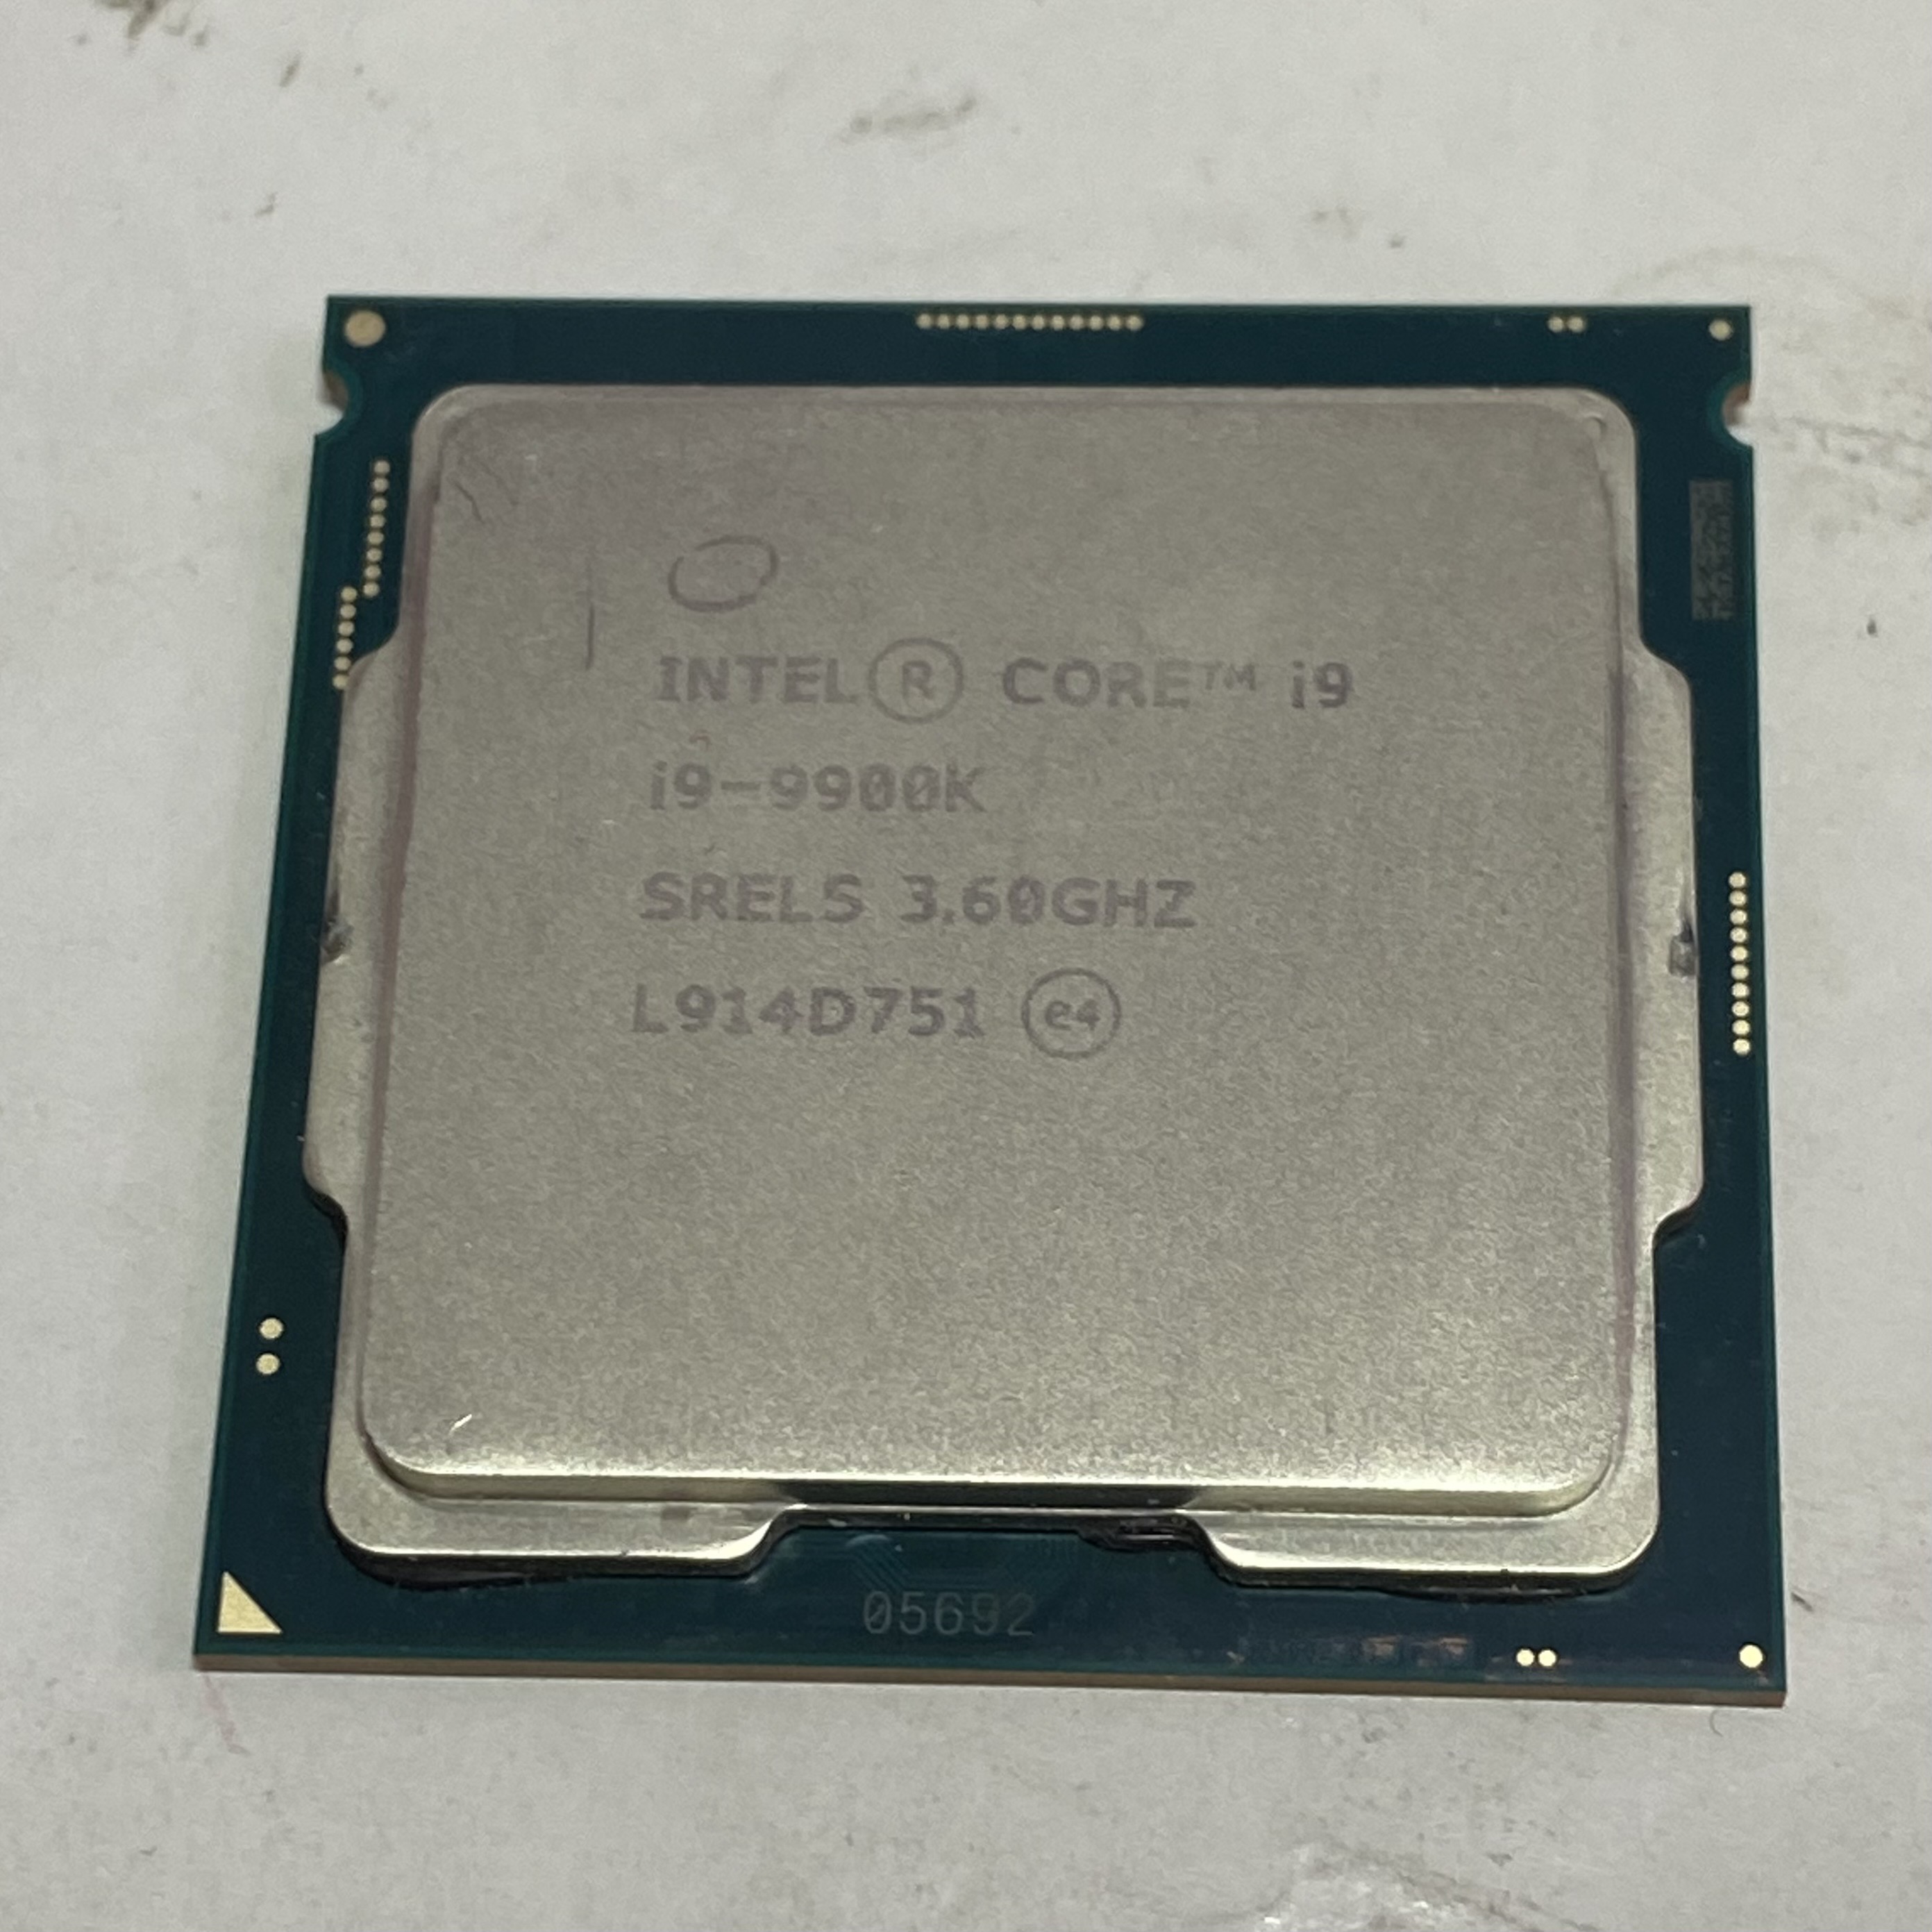 Intel(インテル) Core i9-9900K 3.60GHzの激安通販 - パソコンショップパウ